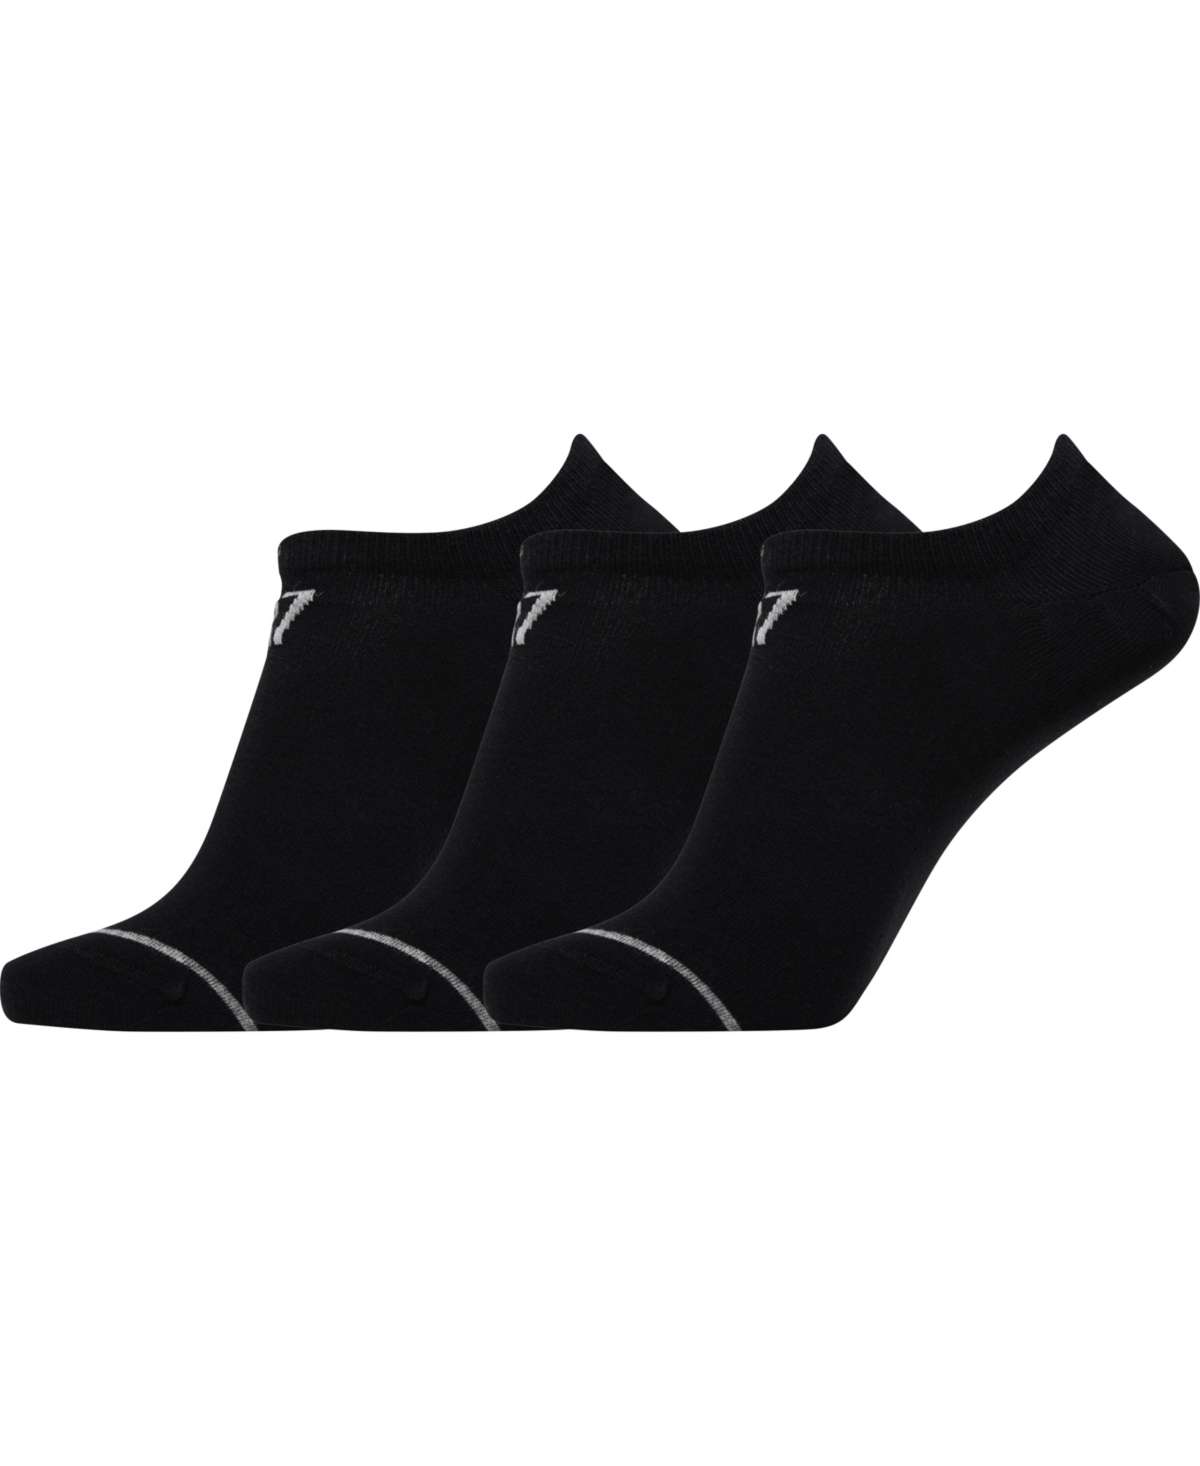 Cr7 Men's Athletic Footie Socks, Pack Of 3 In Black